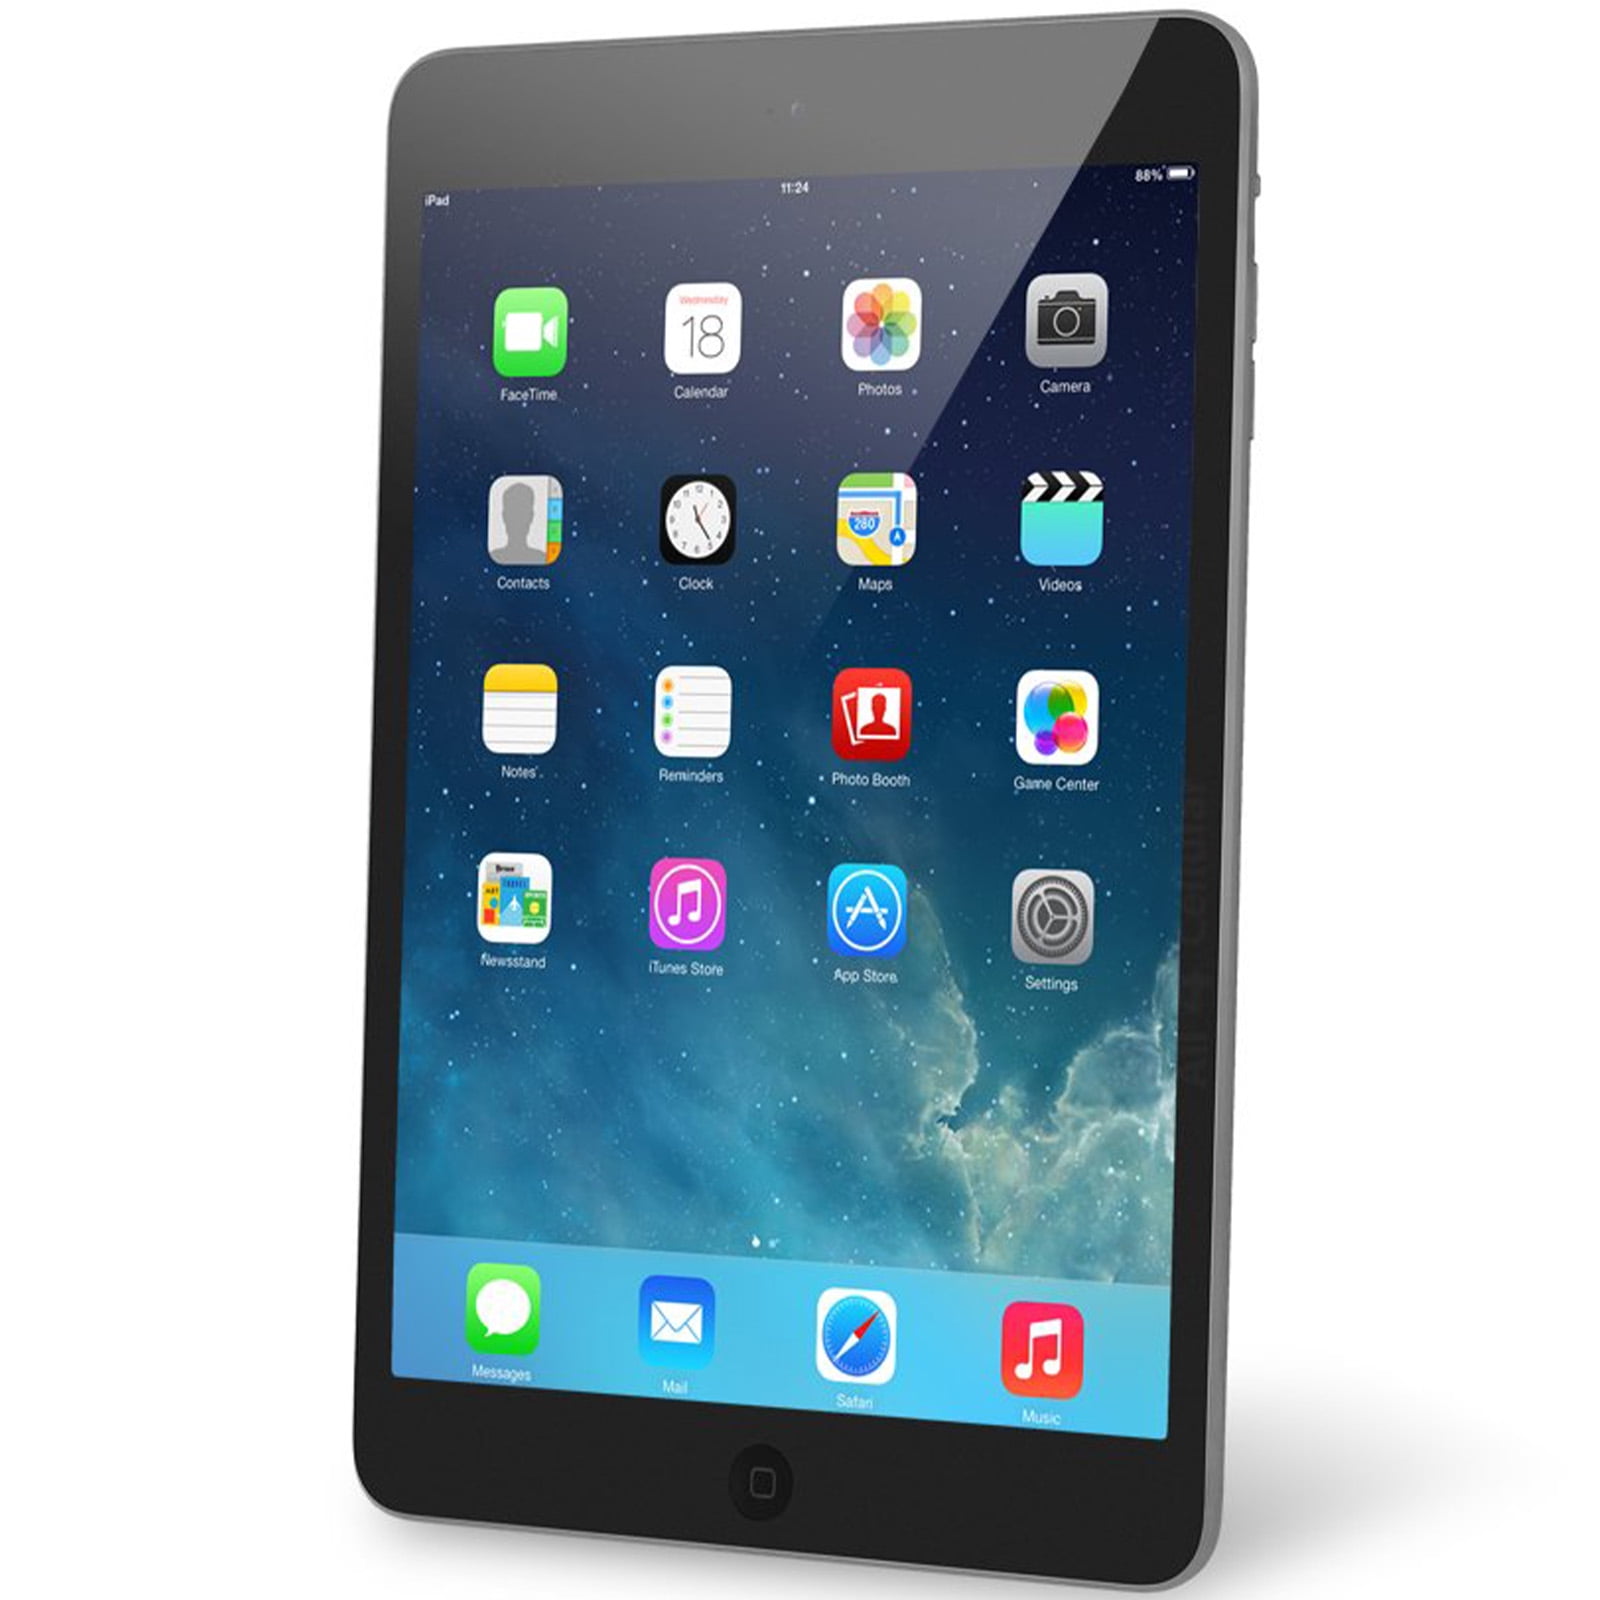 Apple 7.9-inch Retina iPad Mini 2, Wi-Fi Only, 16GB, Comes in 